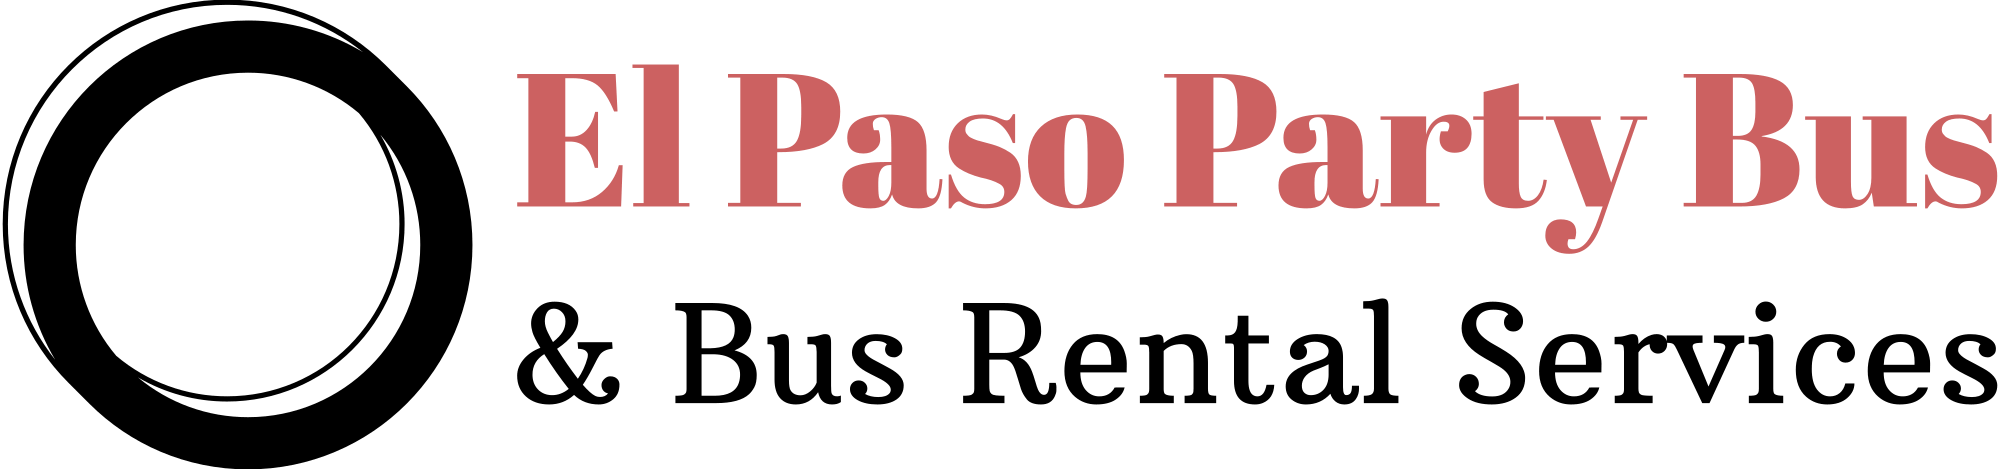 El Paso Party Bus Company logo